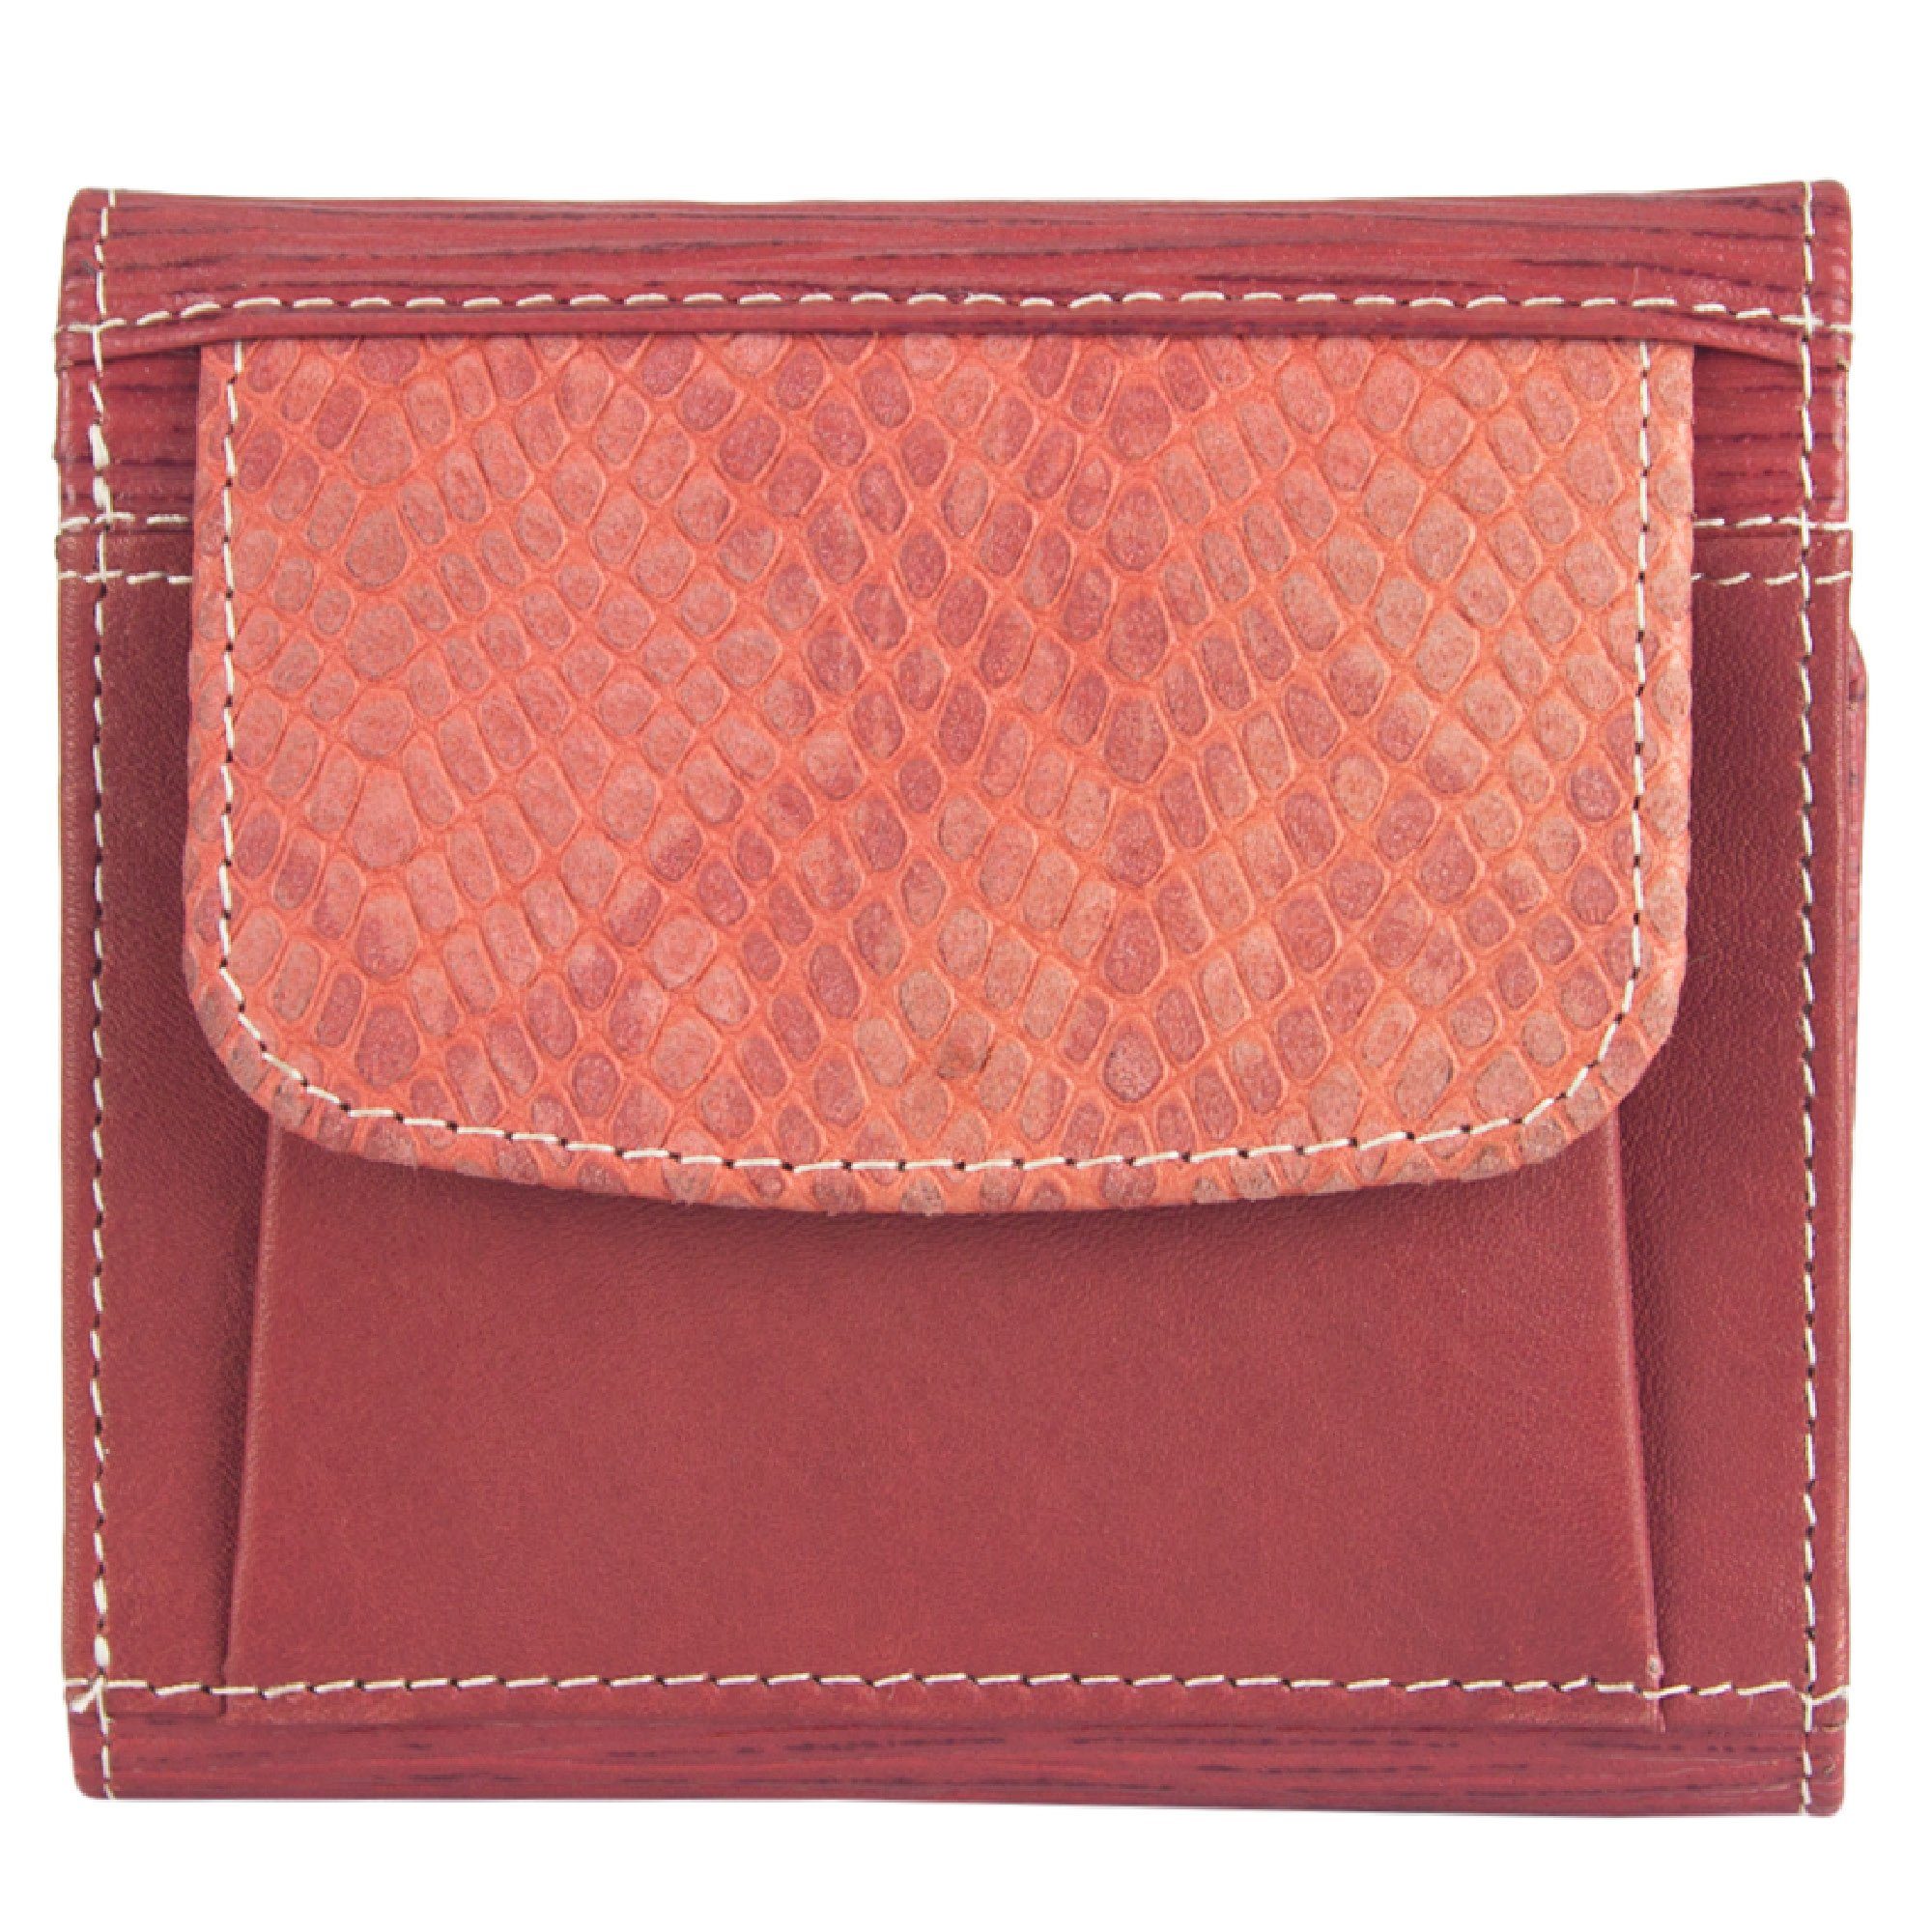 klein Sunsa Leder Geldbeutel Leder, orange /rot echt Geldbörse RFID-Schutz, mit Unisex Portemonnaie Damen, Brieftasche Lederresten, aus echt recycelten